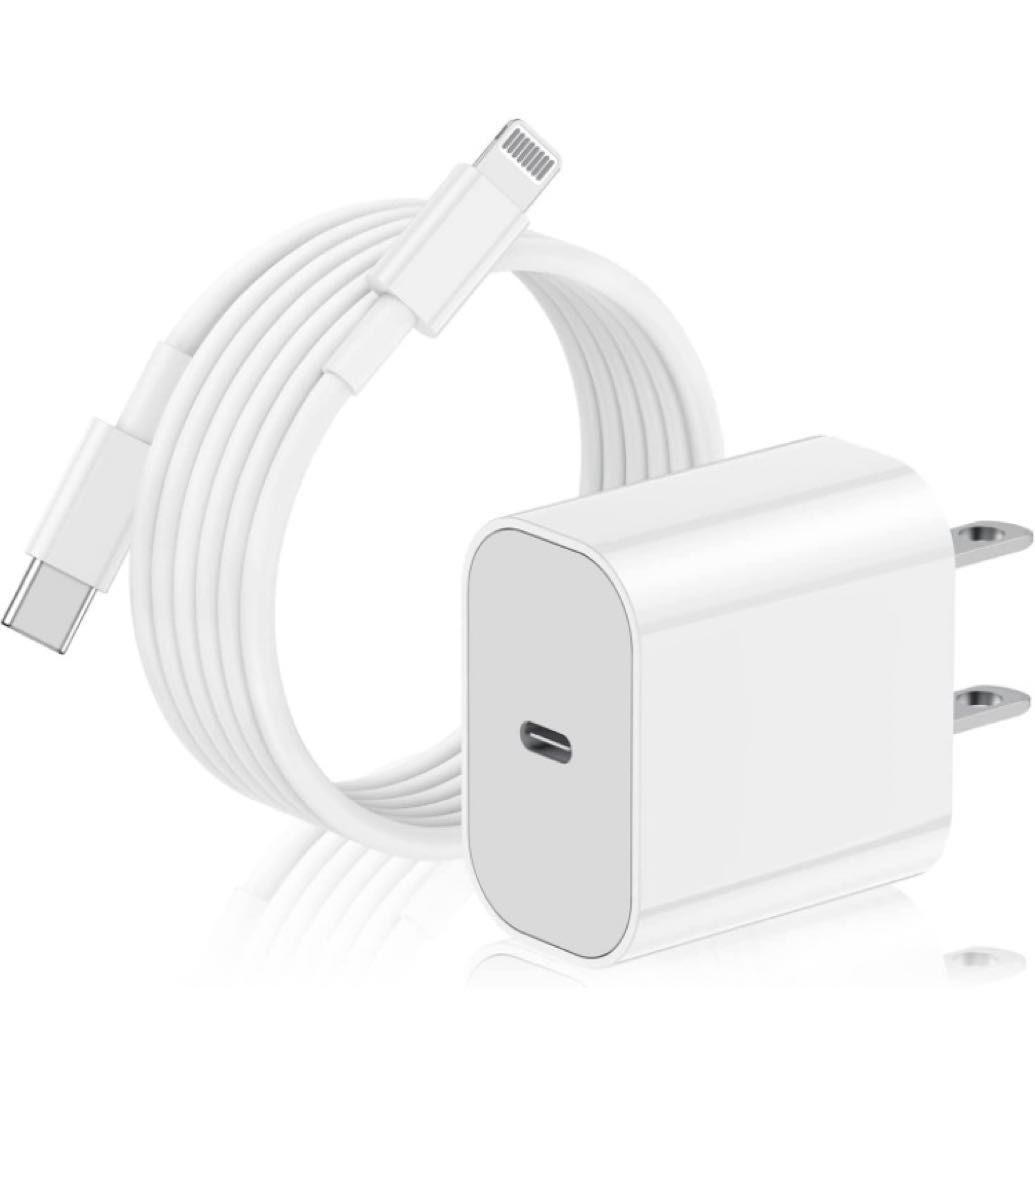 充電器 20W PD 急速充電  USB C - Lightning ケーブル 2m付き  iPhone/iPad/AirPods